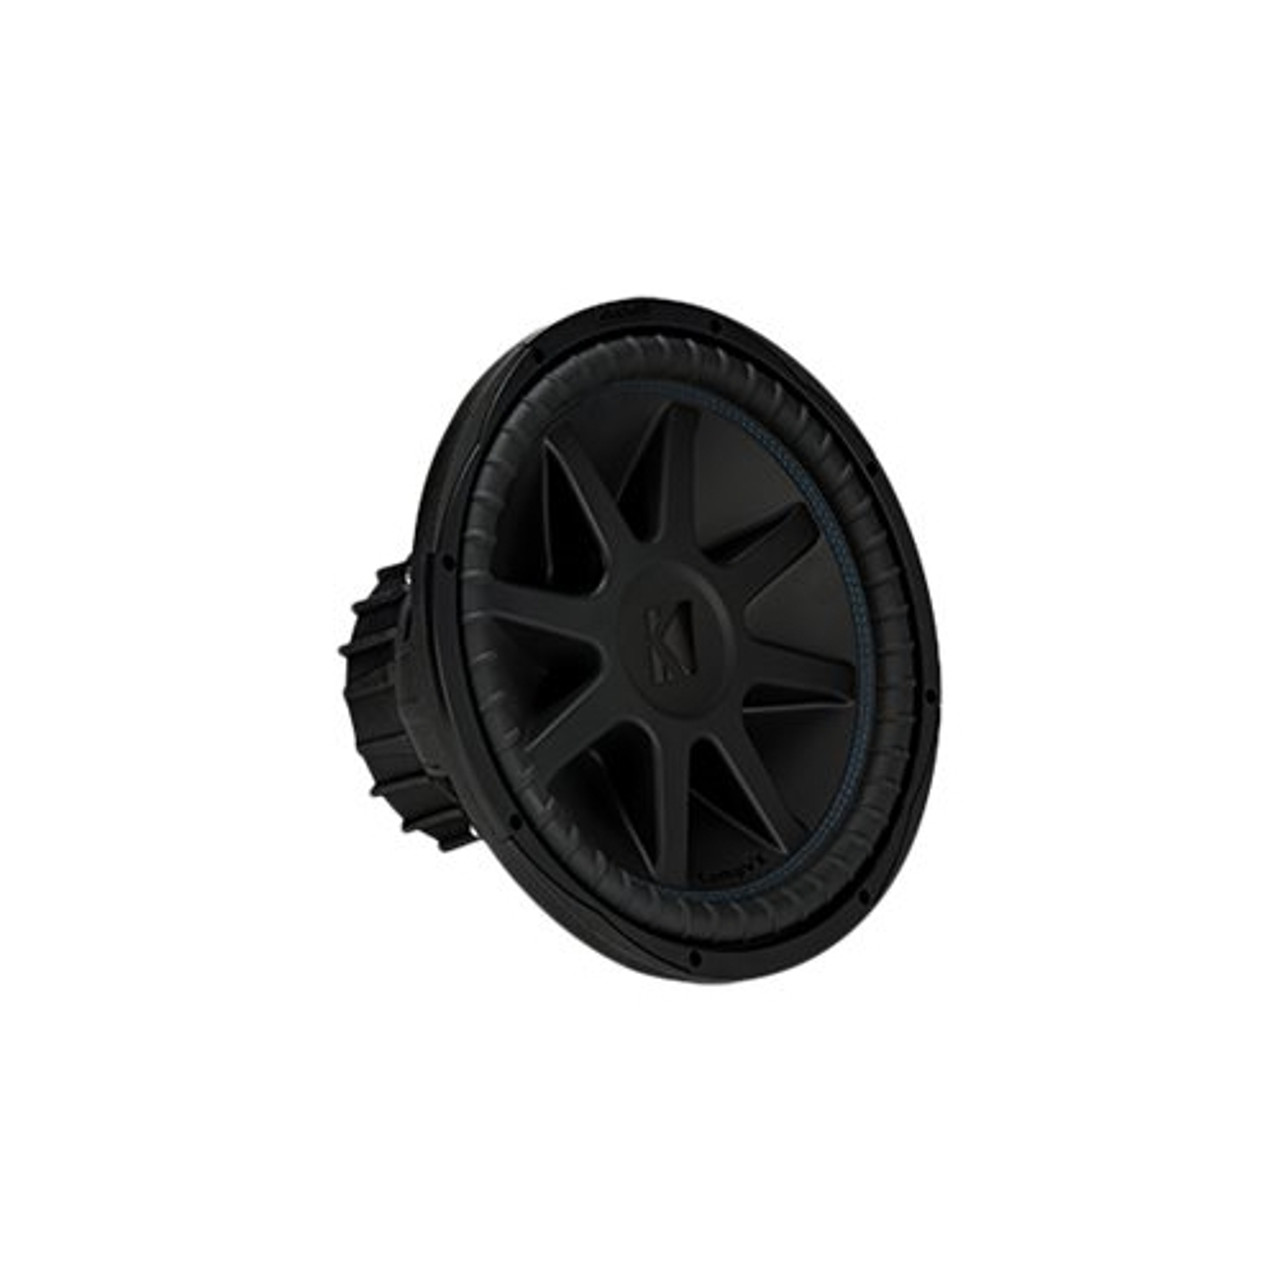 KICKER - CompVX 15" Dual-Voice-Coil 4-Ohm Subwoofer - Black